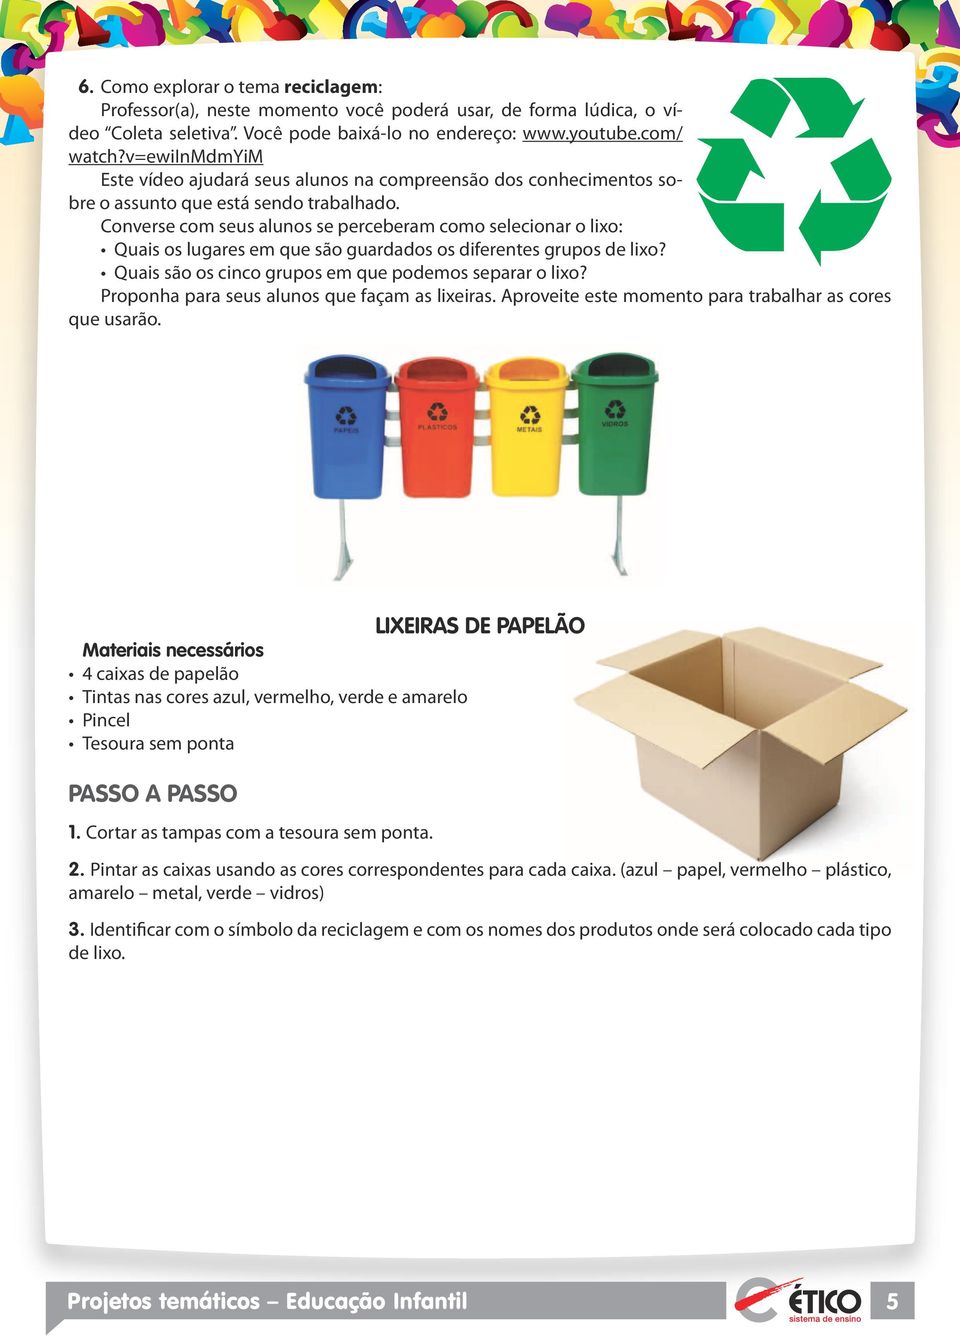 Converse com seus alunos se perceberam como selecionar o lixo: Quais os lugares em que são guardados os diferentes grupos de lixo? Quais são os cinco grupos em que podemos separar o lixo?